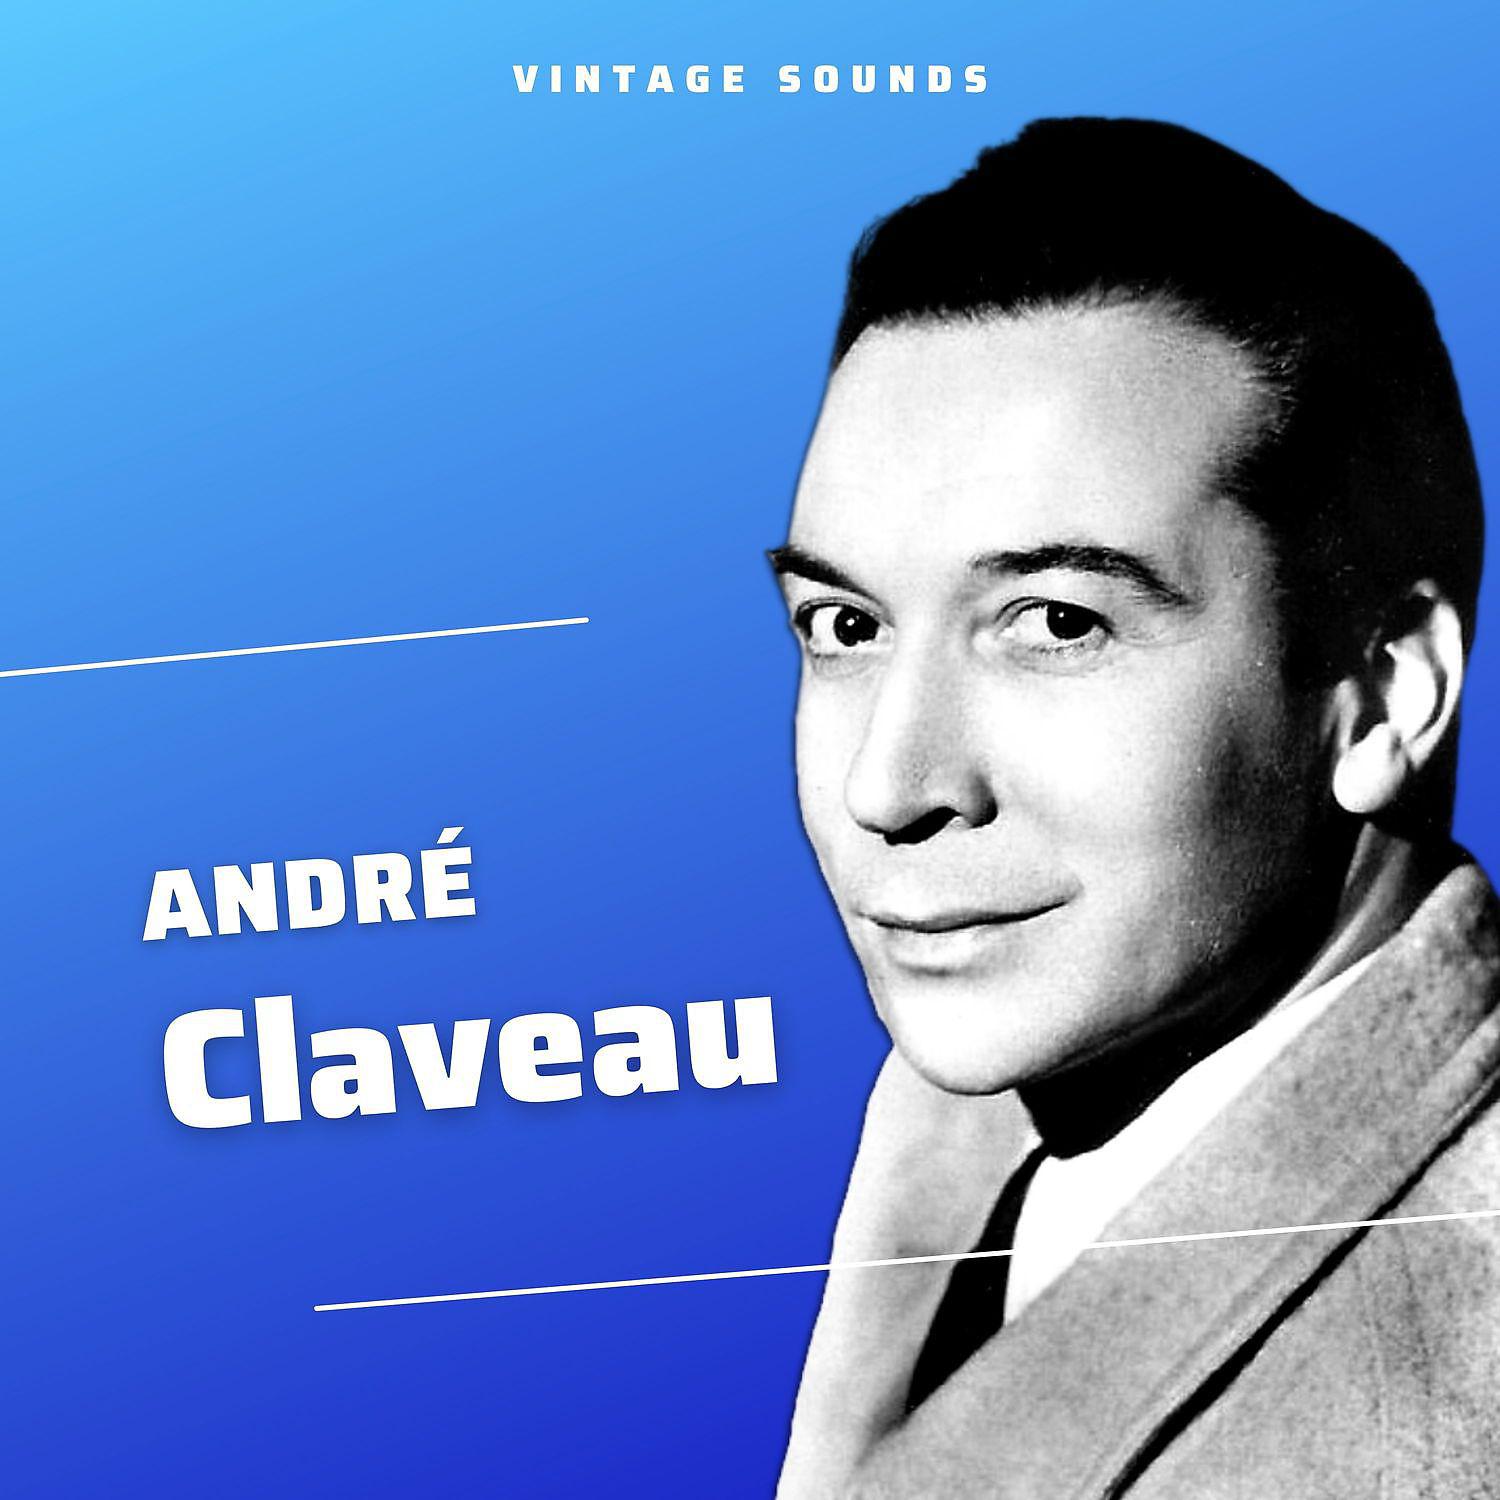 Андре песни. Claveau. Andre cadou le Francais.